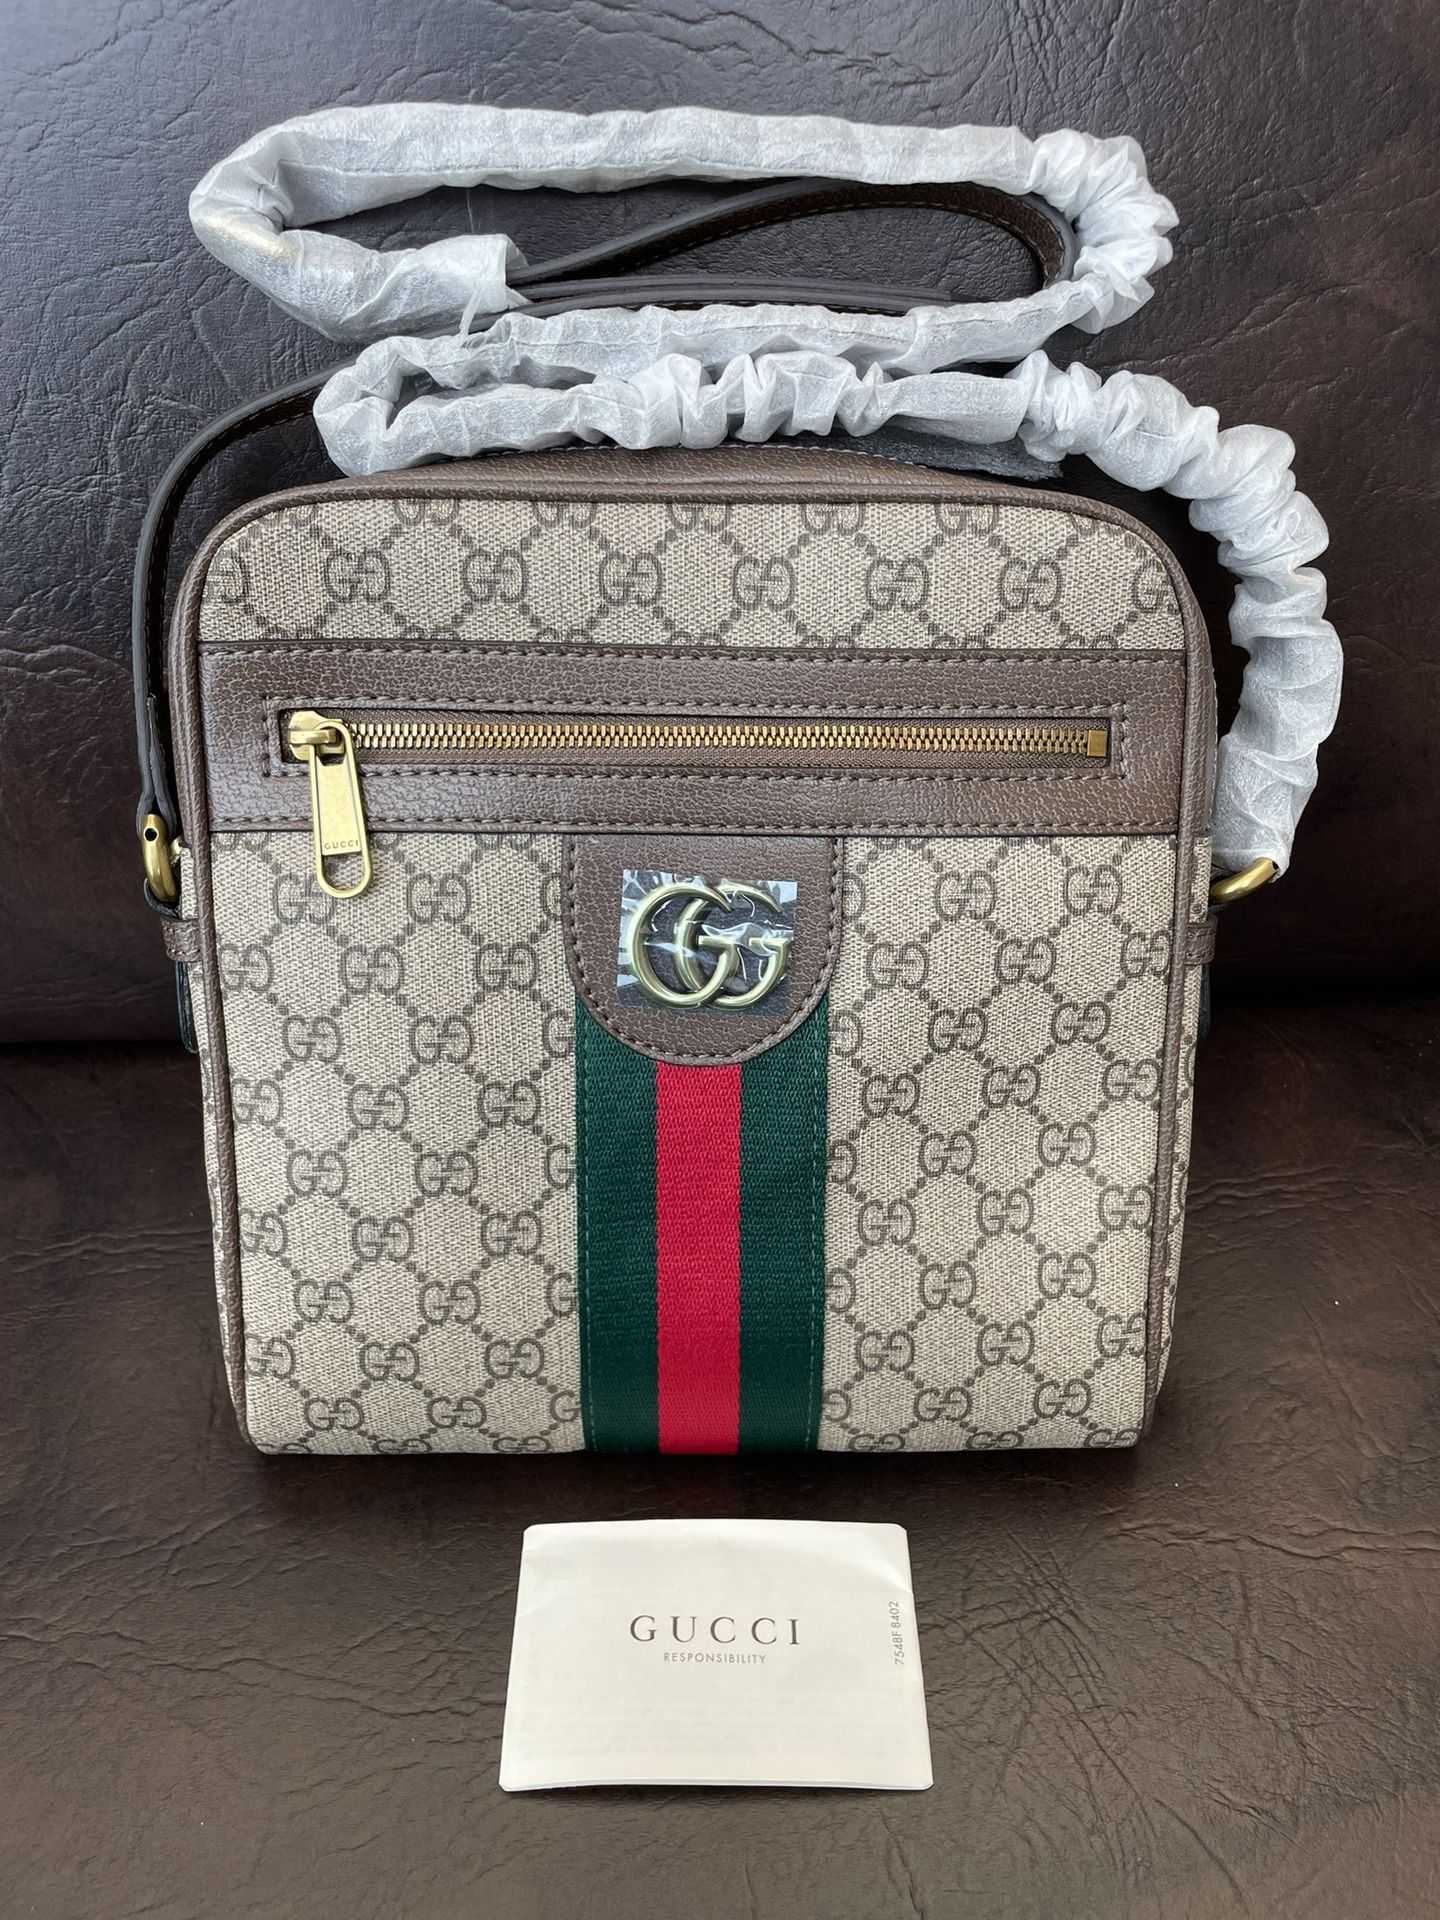 *Best Offer* Gucci Bag